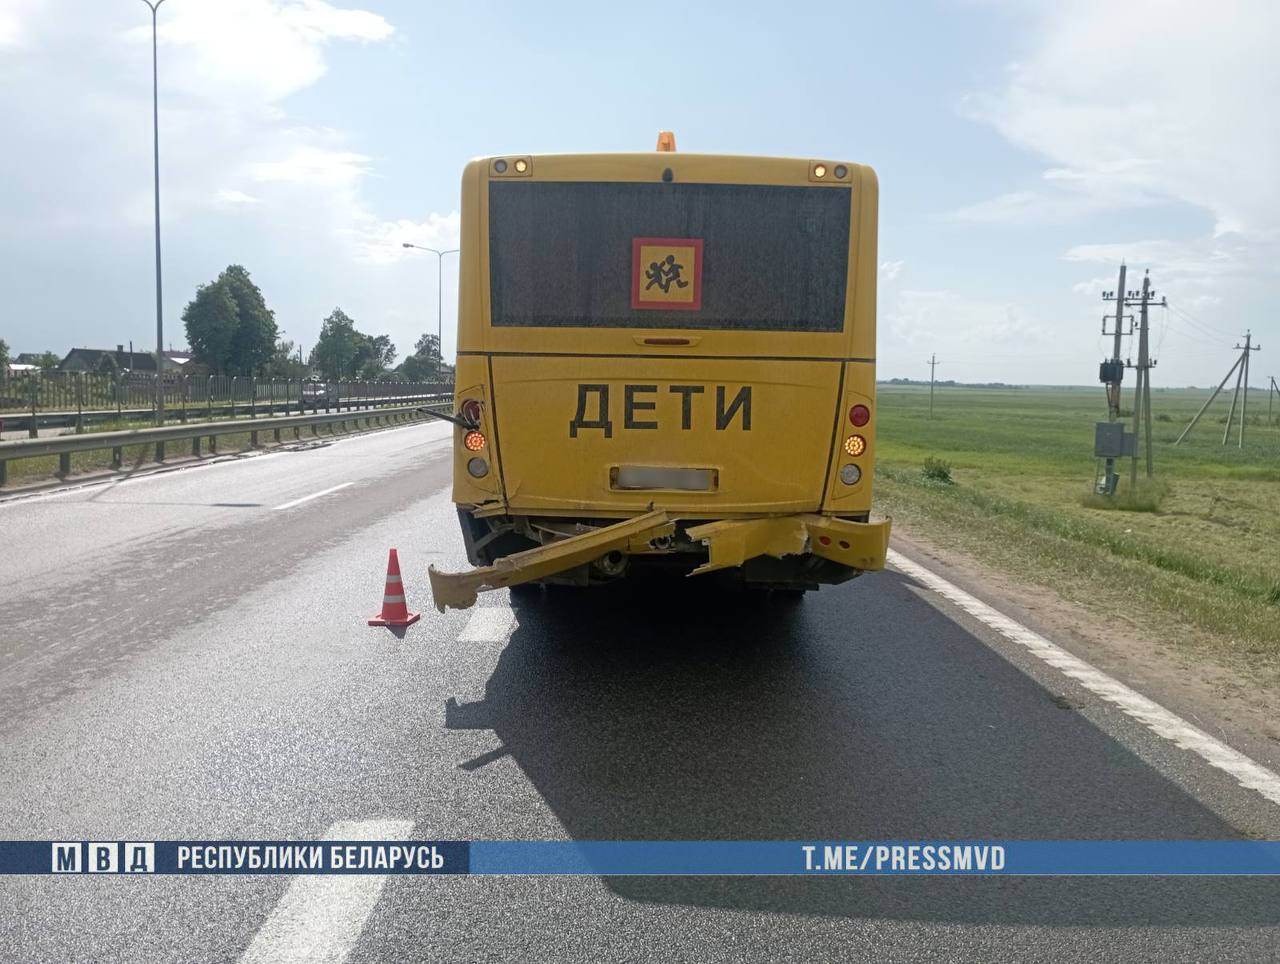 Смертельная авария: BMW под управлением могилевчанина столкнулась со школьным автобусом — водитель легковушки погиб